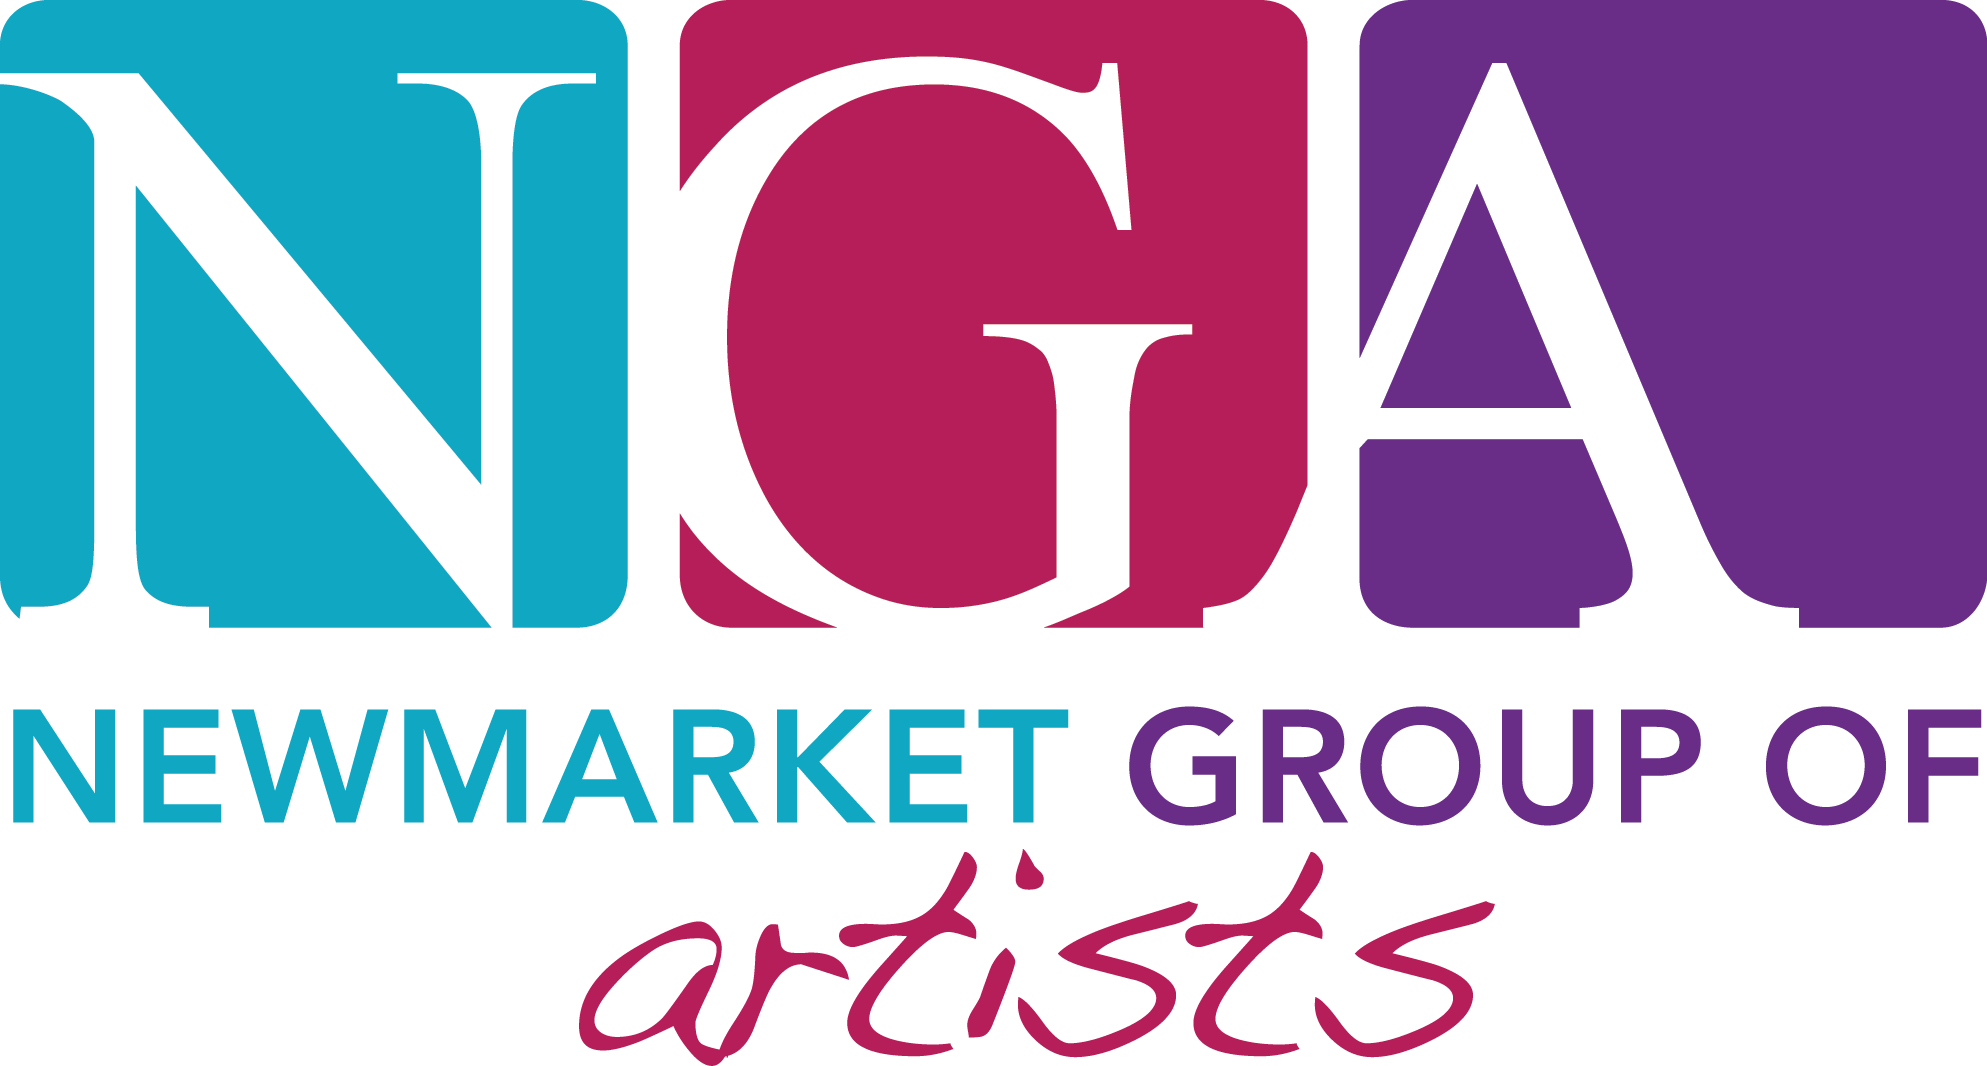 NGA_logo.png